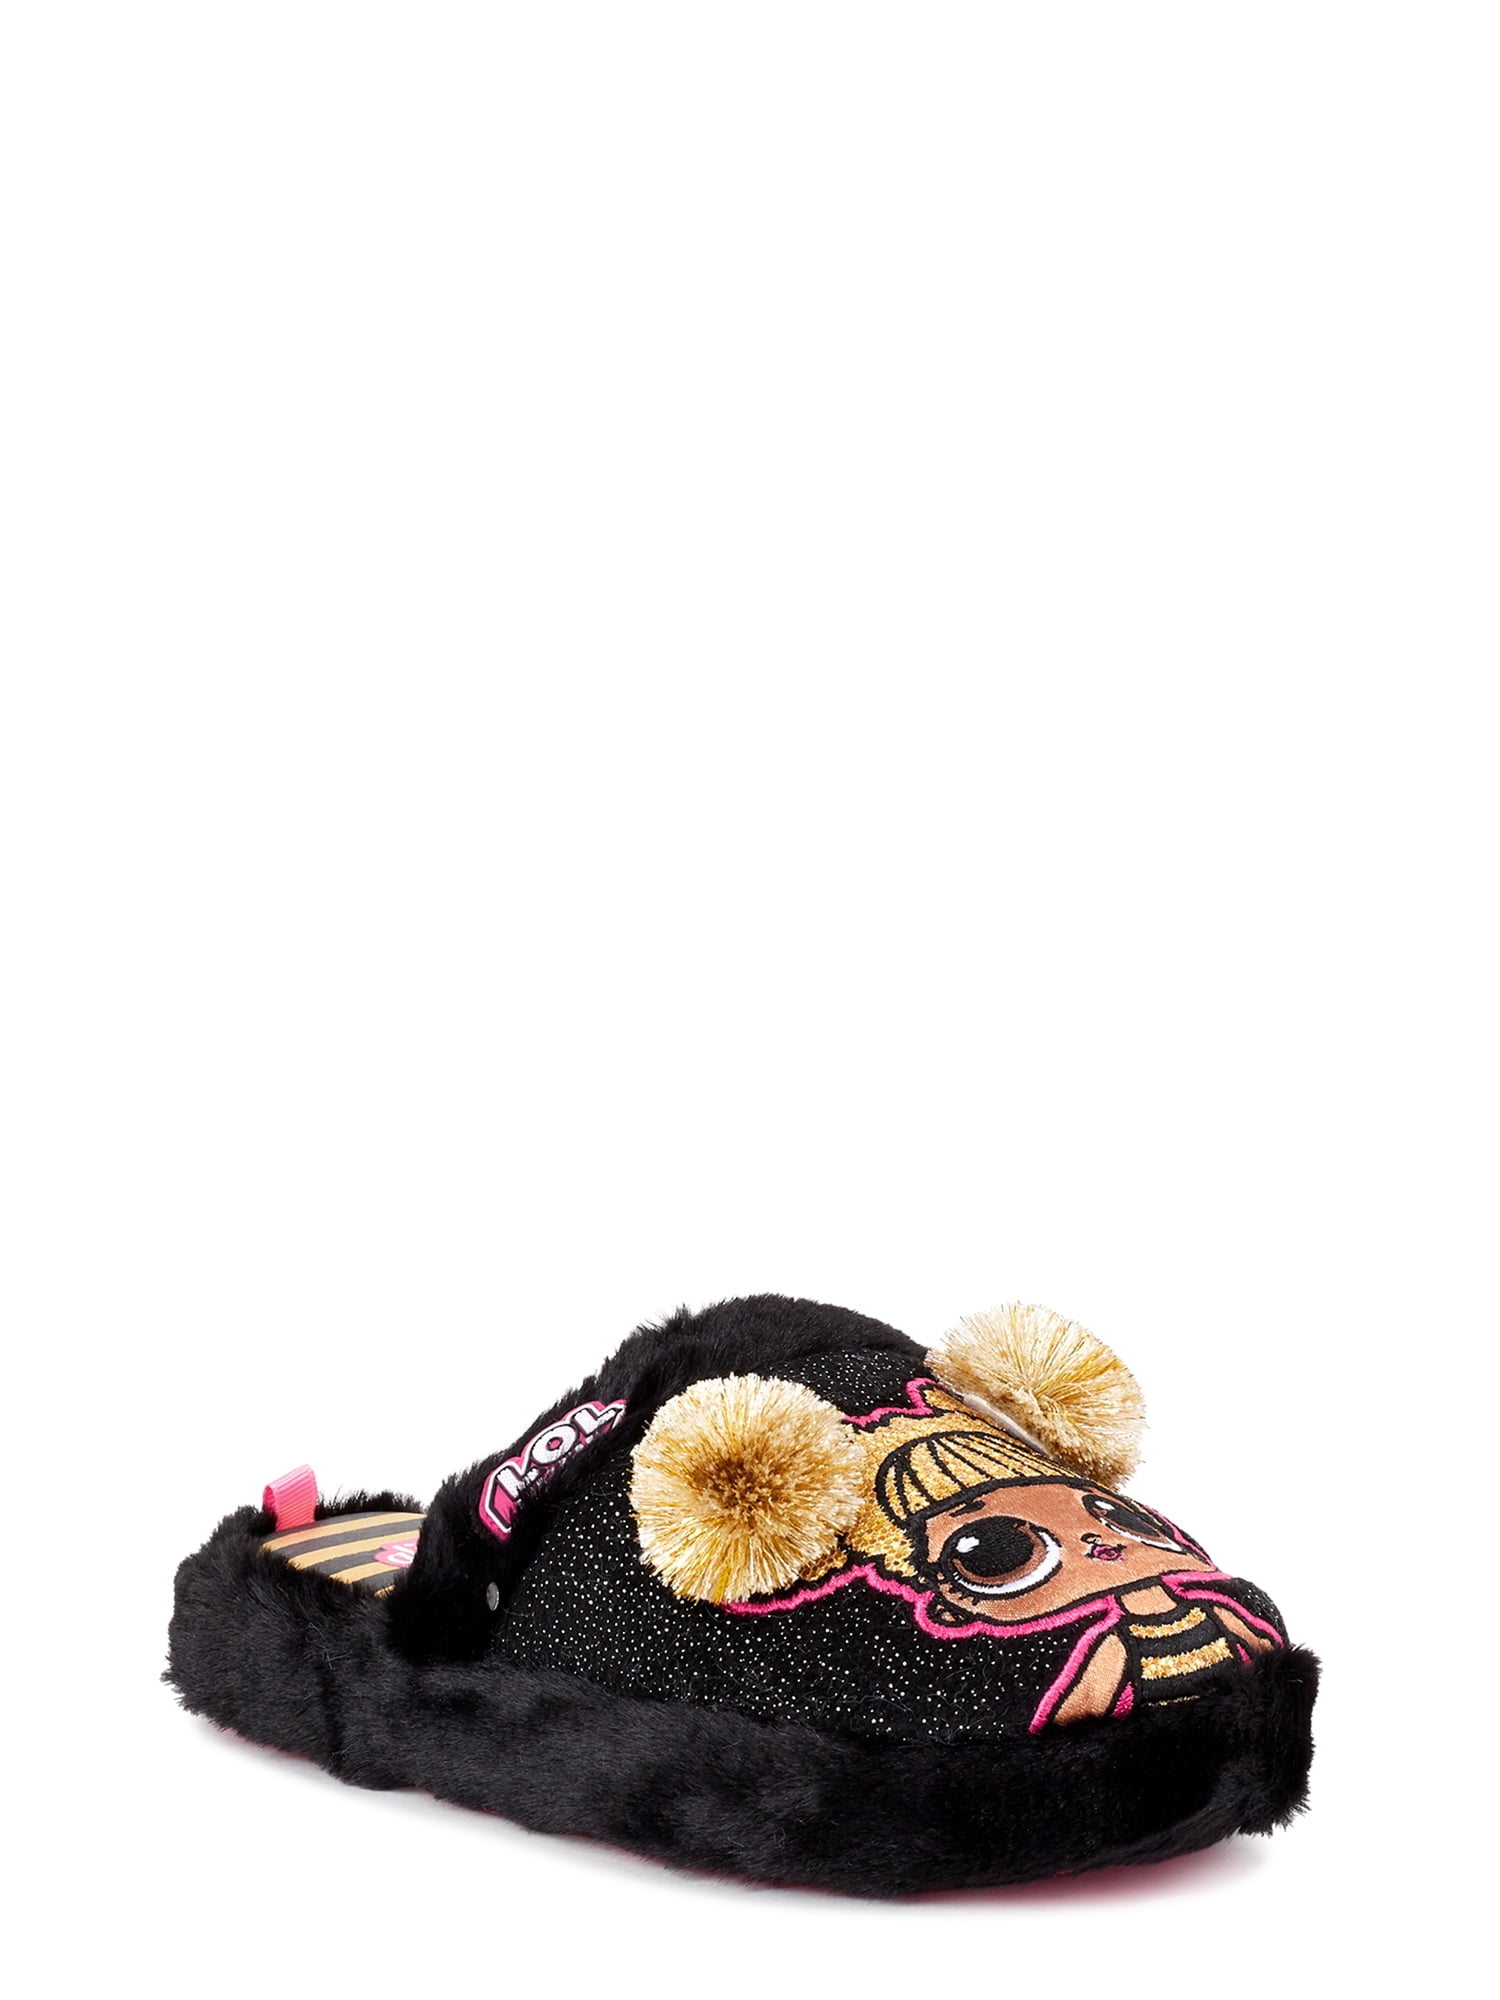 koolaburra lezly slippers